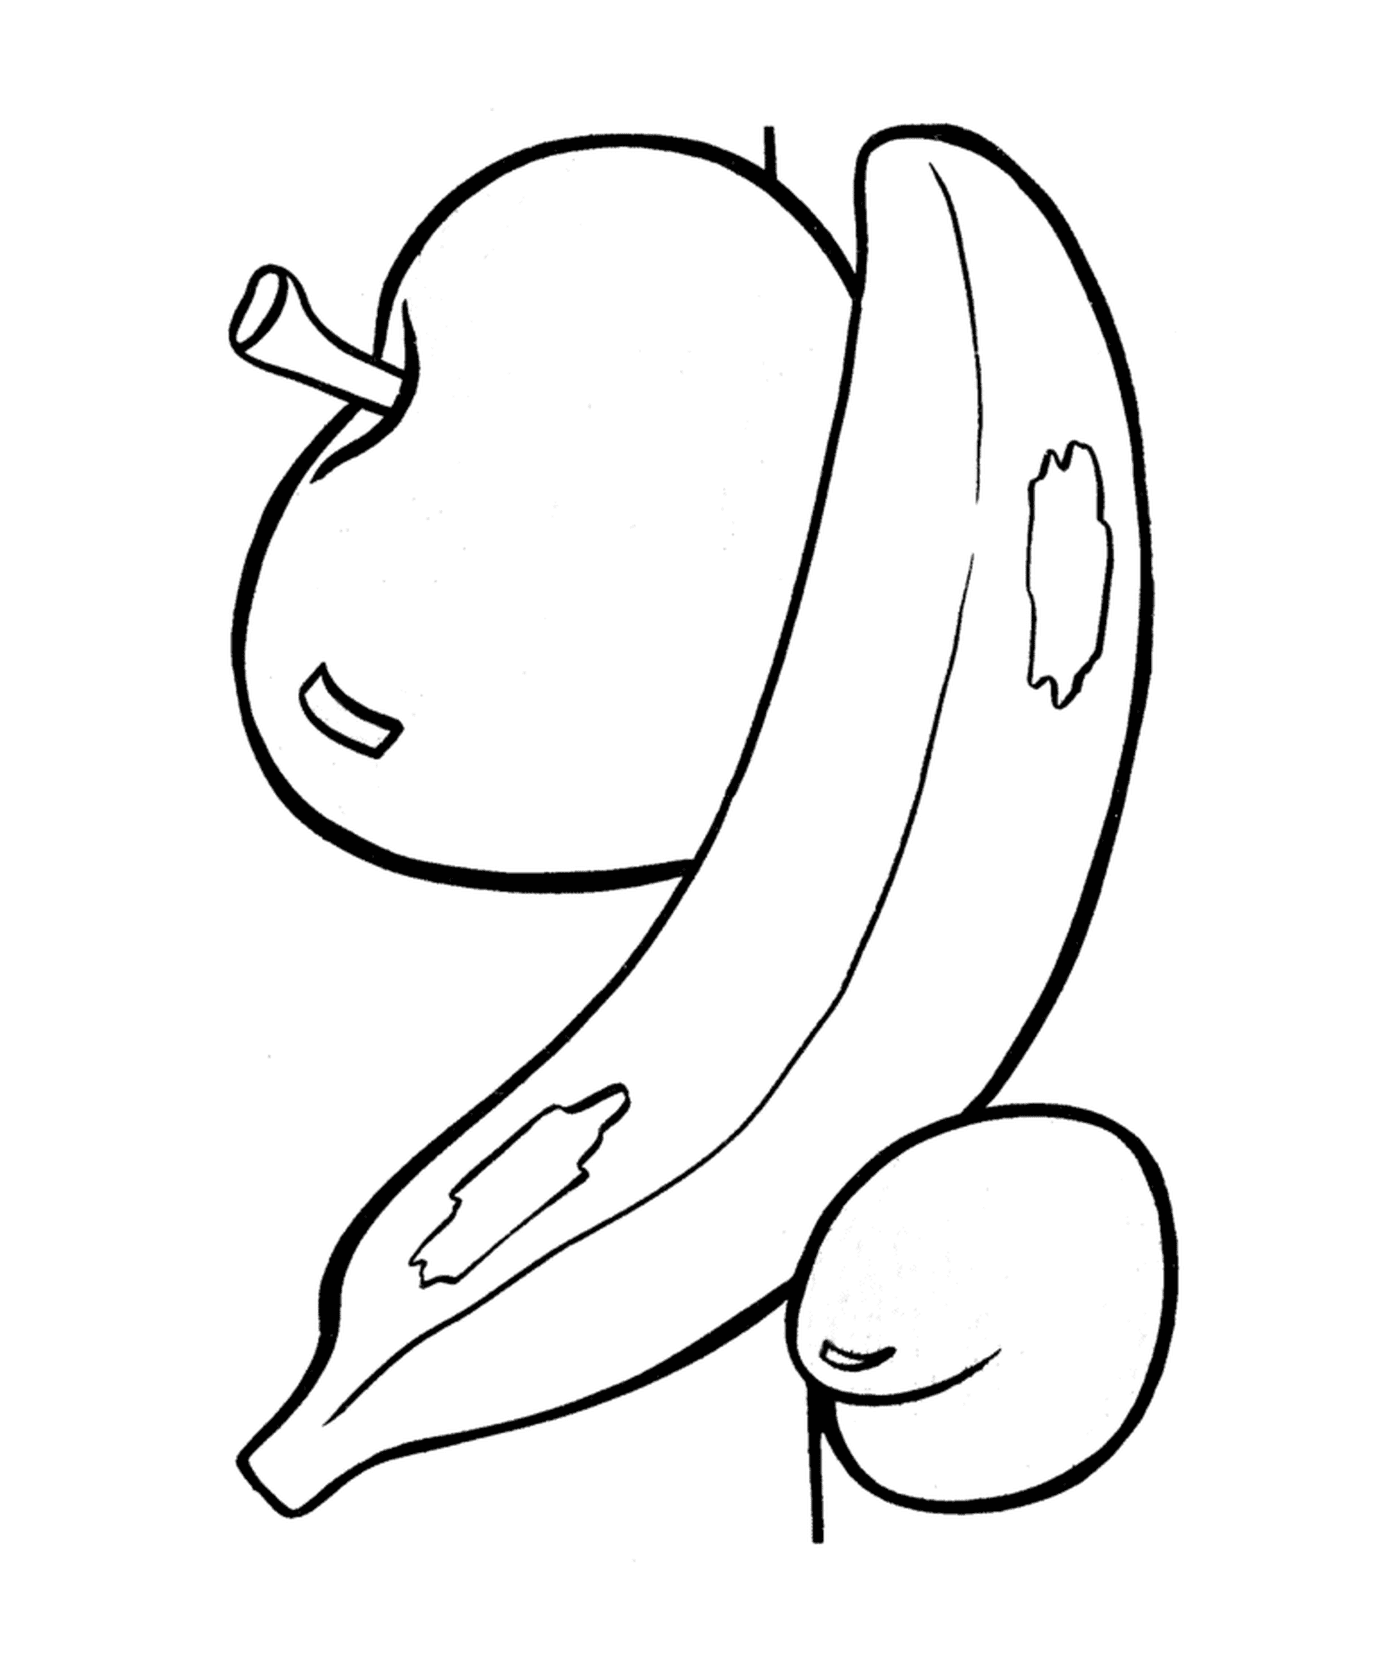  Uma maçã com uma banana 